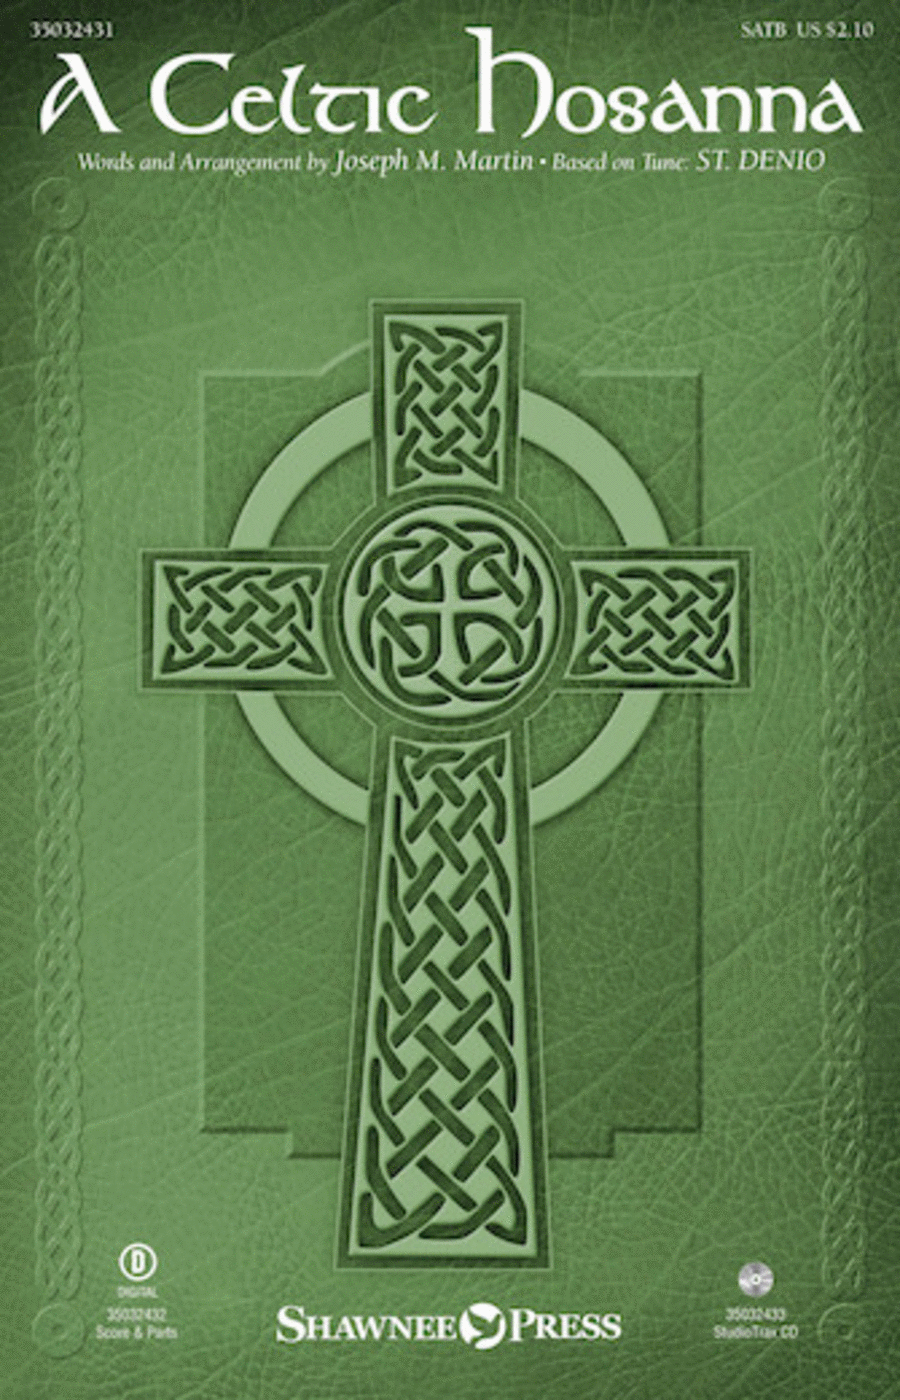 A Celtic Hosanna